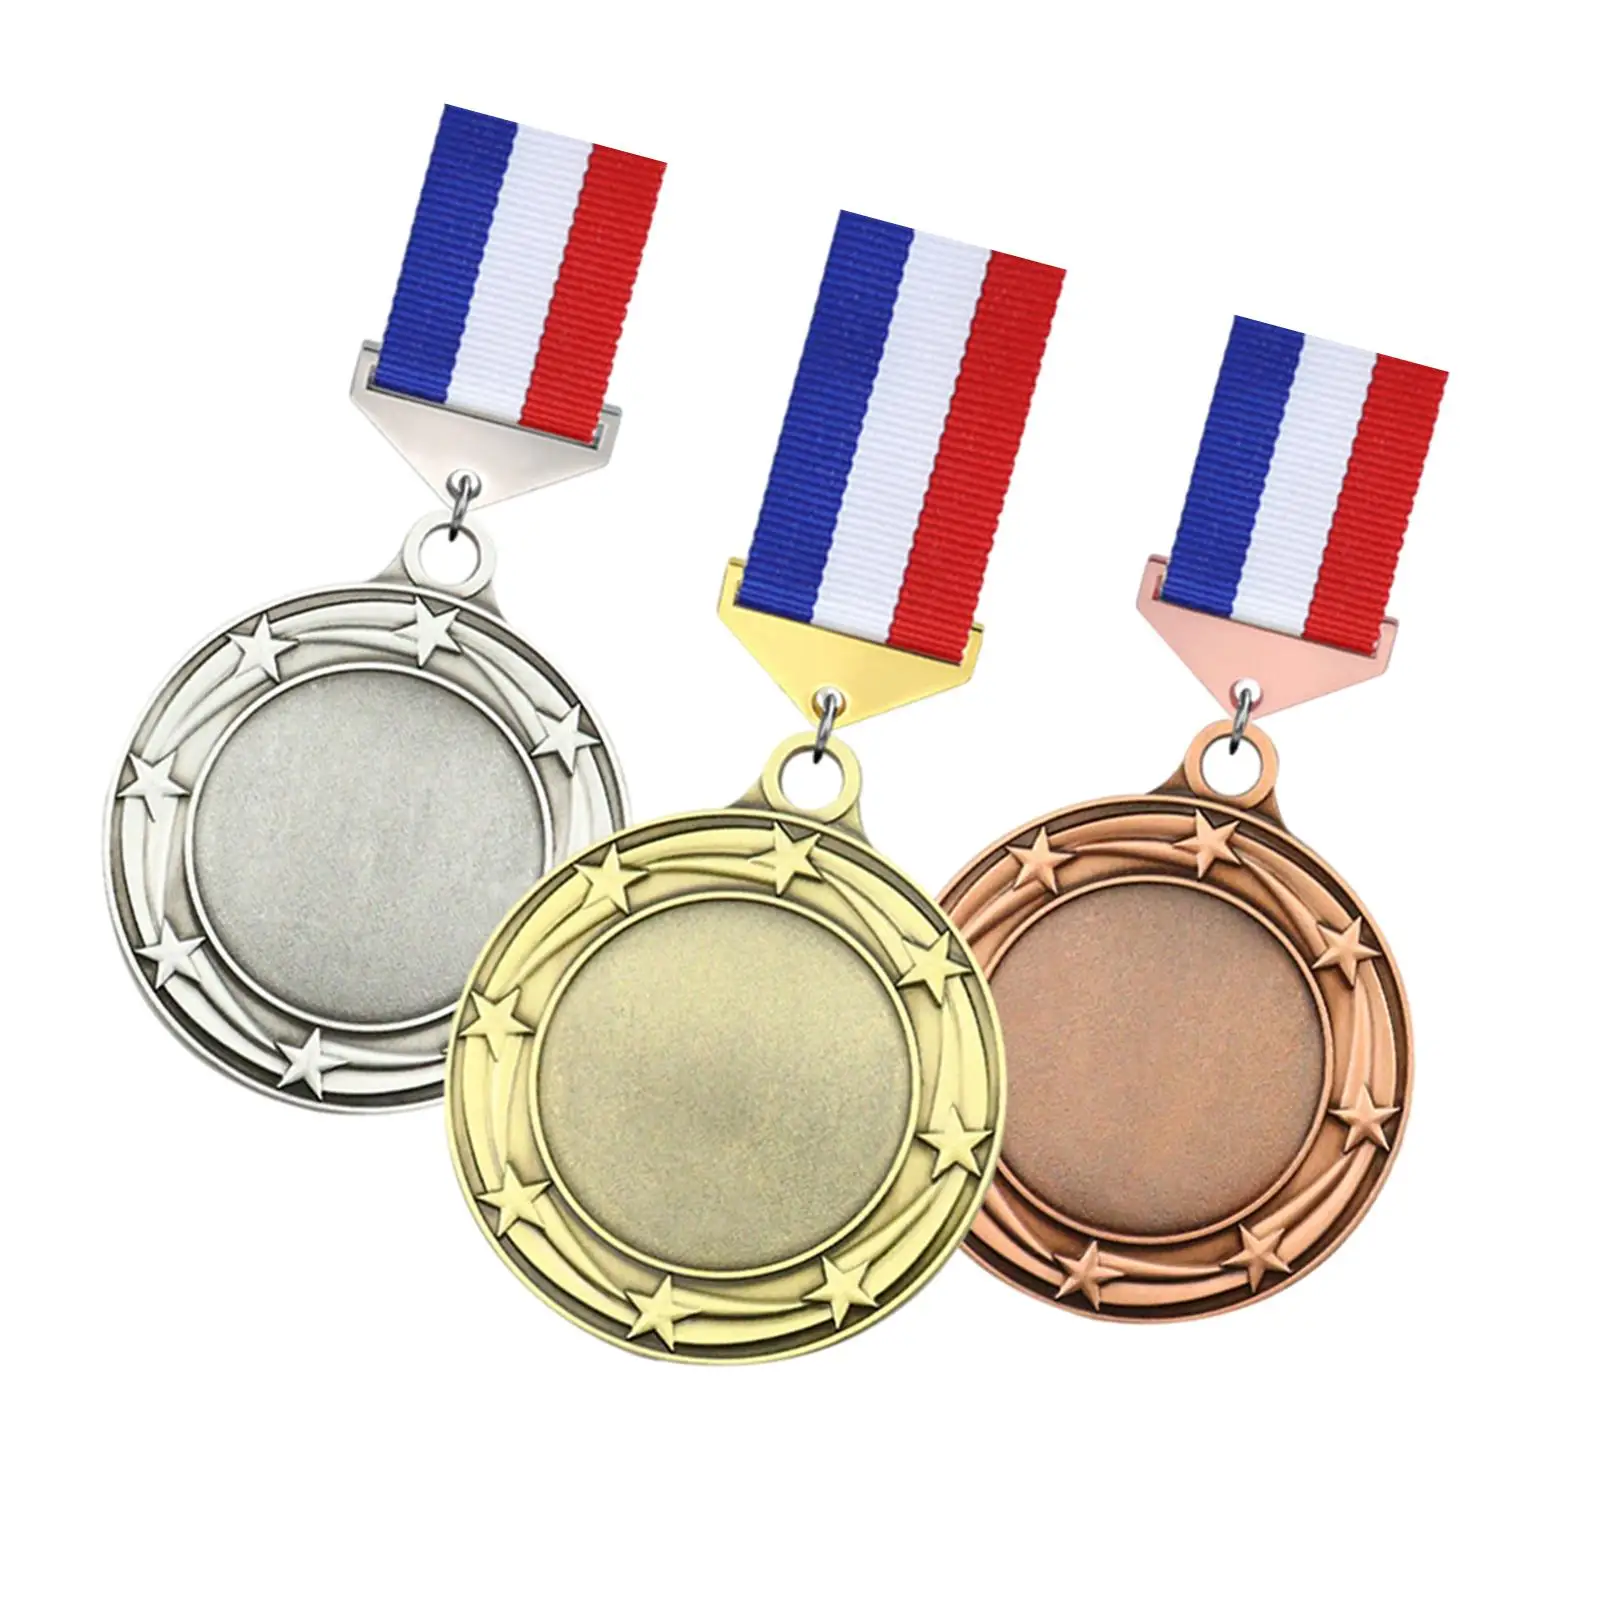 3 sztuki medale metalowe złote srebrne brązowe medale ze stopu cynku medale zdobywcy medali na szkolne imprezy sportowe zawody koszykówki